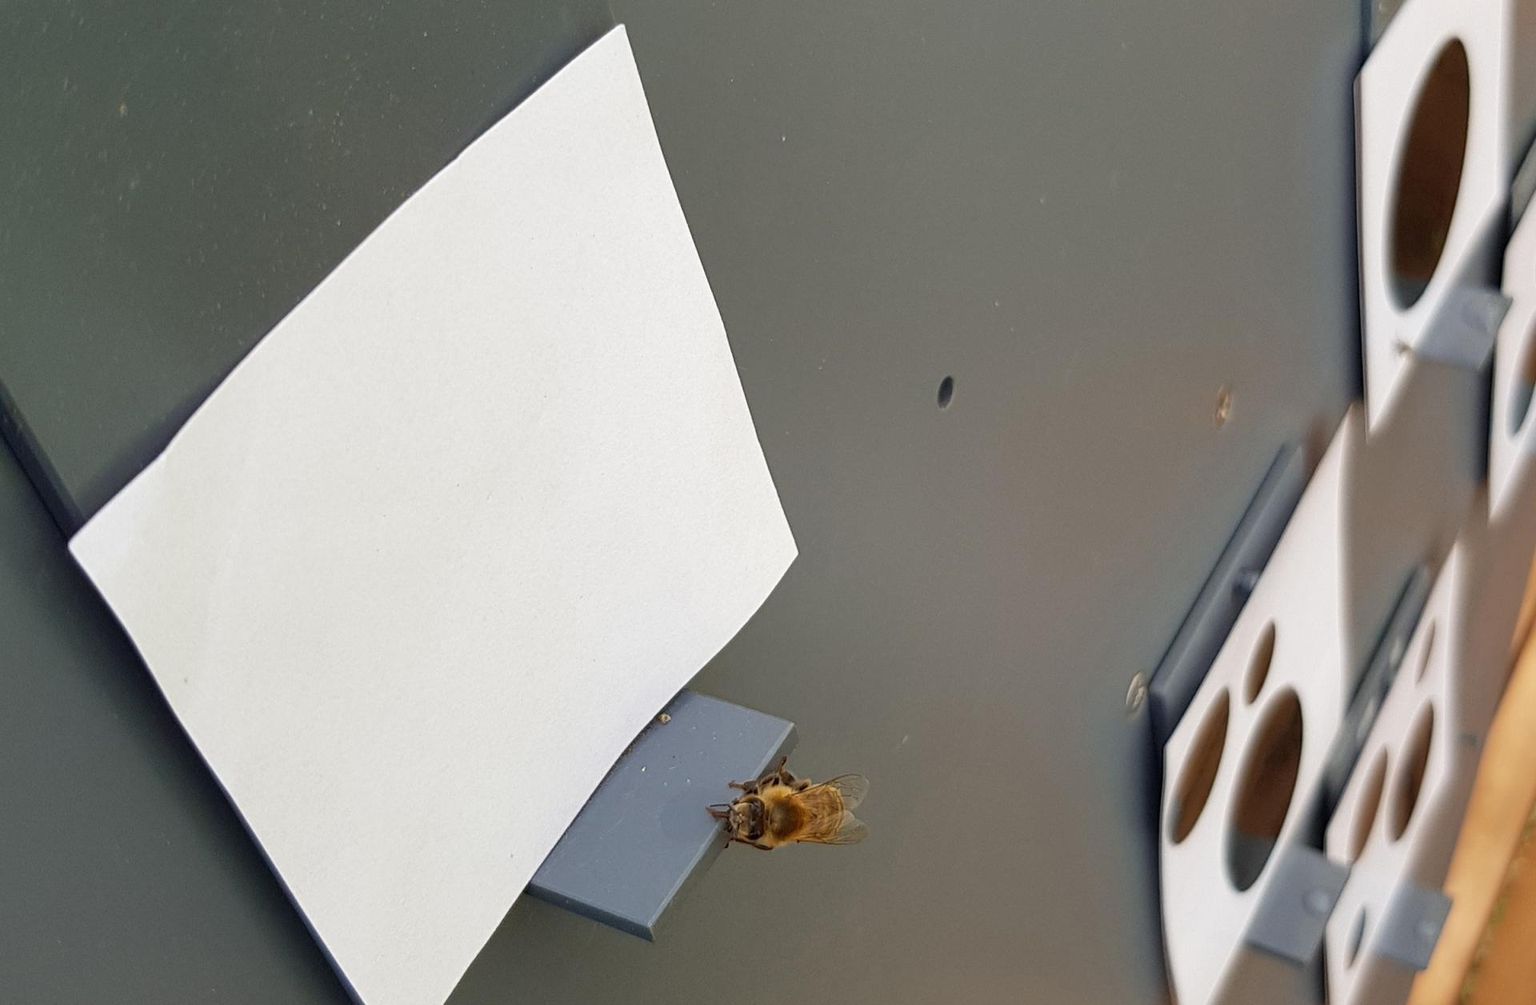 Teadlased tõestasid kavala katsega, et mesilased on võimelised mõistma, et tühjal paberil on vähem laike kui mitme täpiga lehel. Avastus näitab, et ka ülipisike aju suudab hoomata keerukaid abstraktseid konstruktsioone.